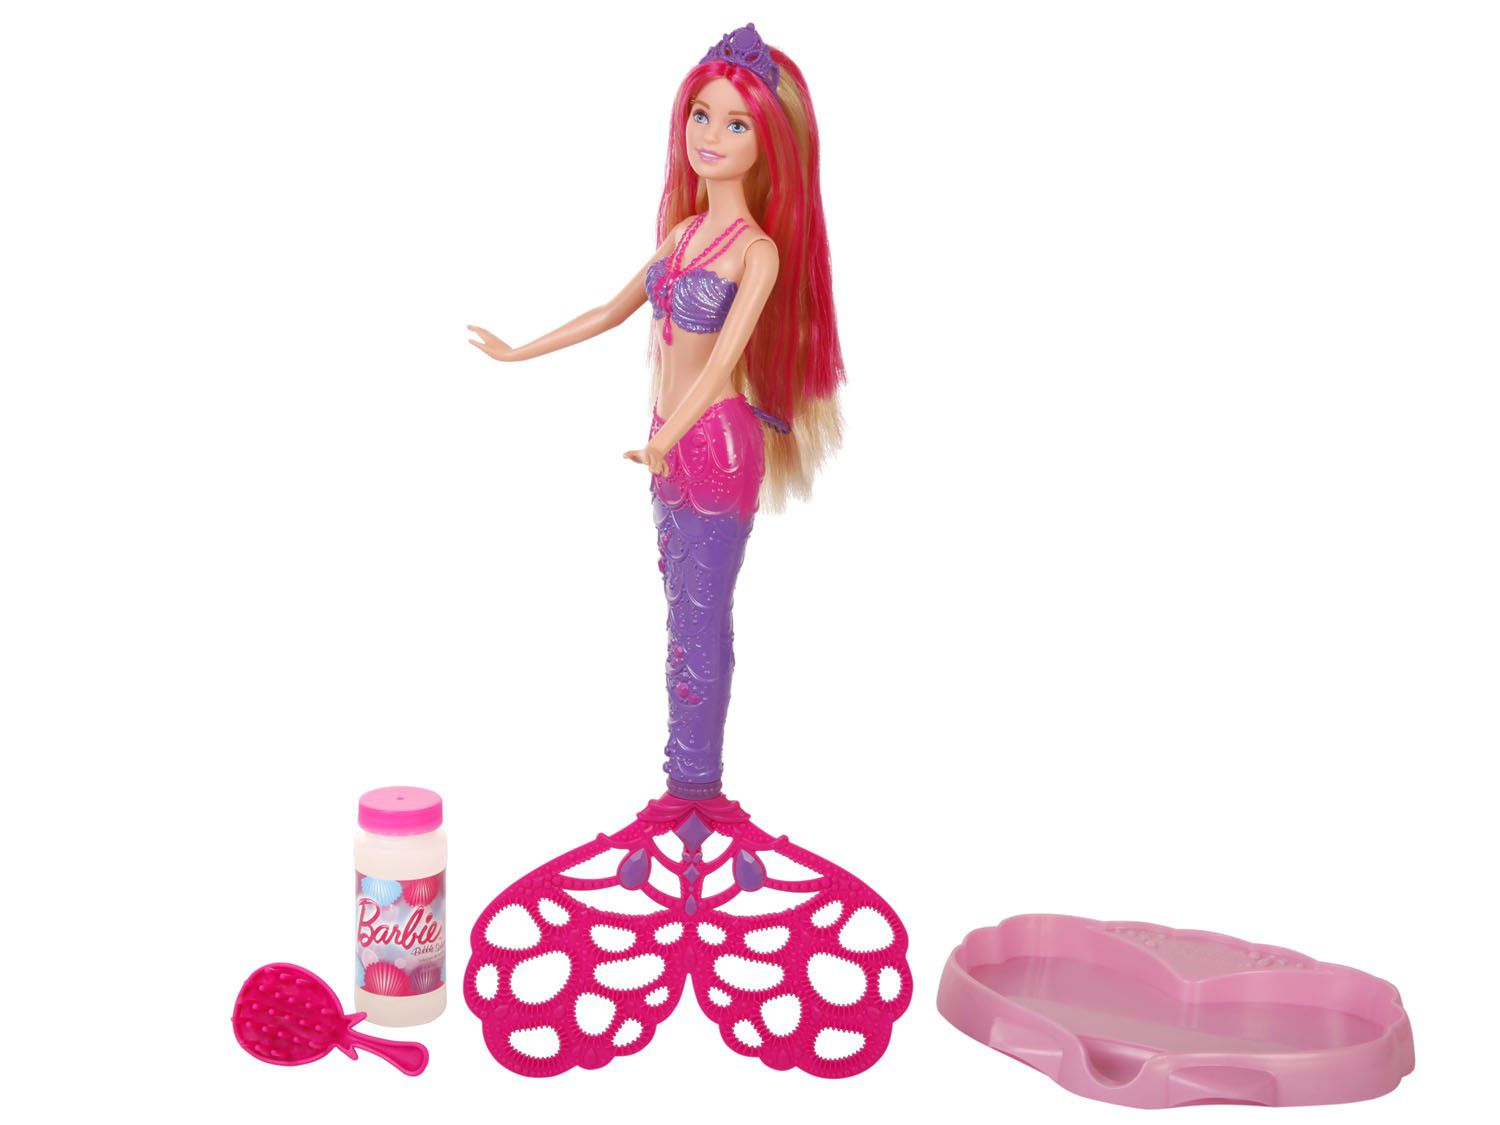 Novos jogos da Barbie grátis para sua diversão